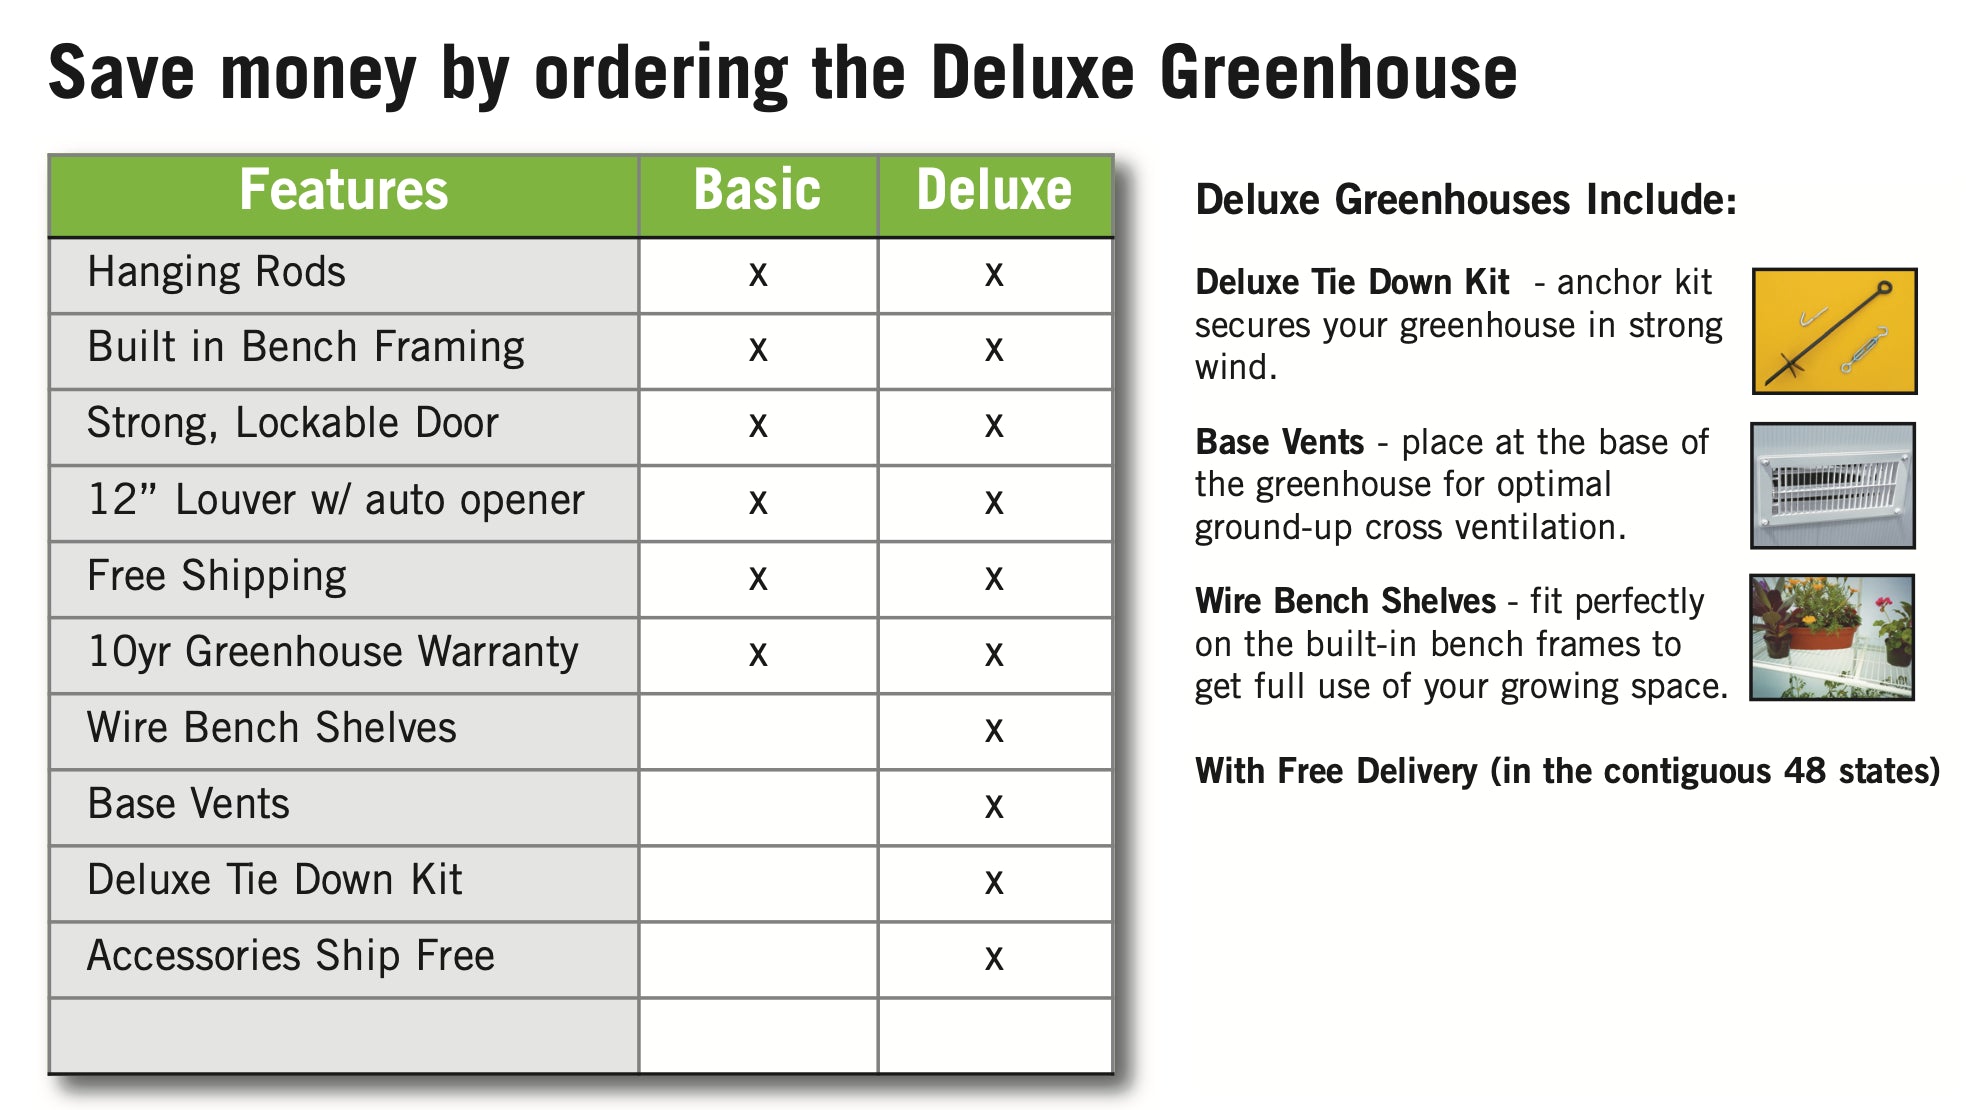 Gardener's Oasis Greenhouse - Gardener's Oasis™  8x8x16.ft Heat Efficient Greenhouse